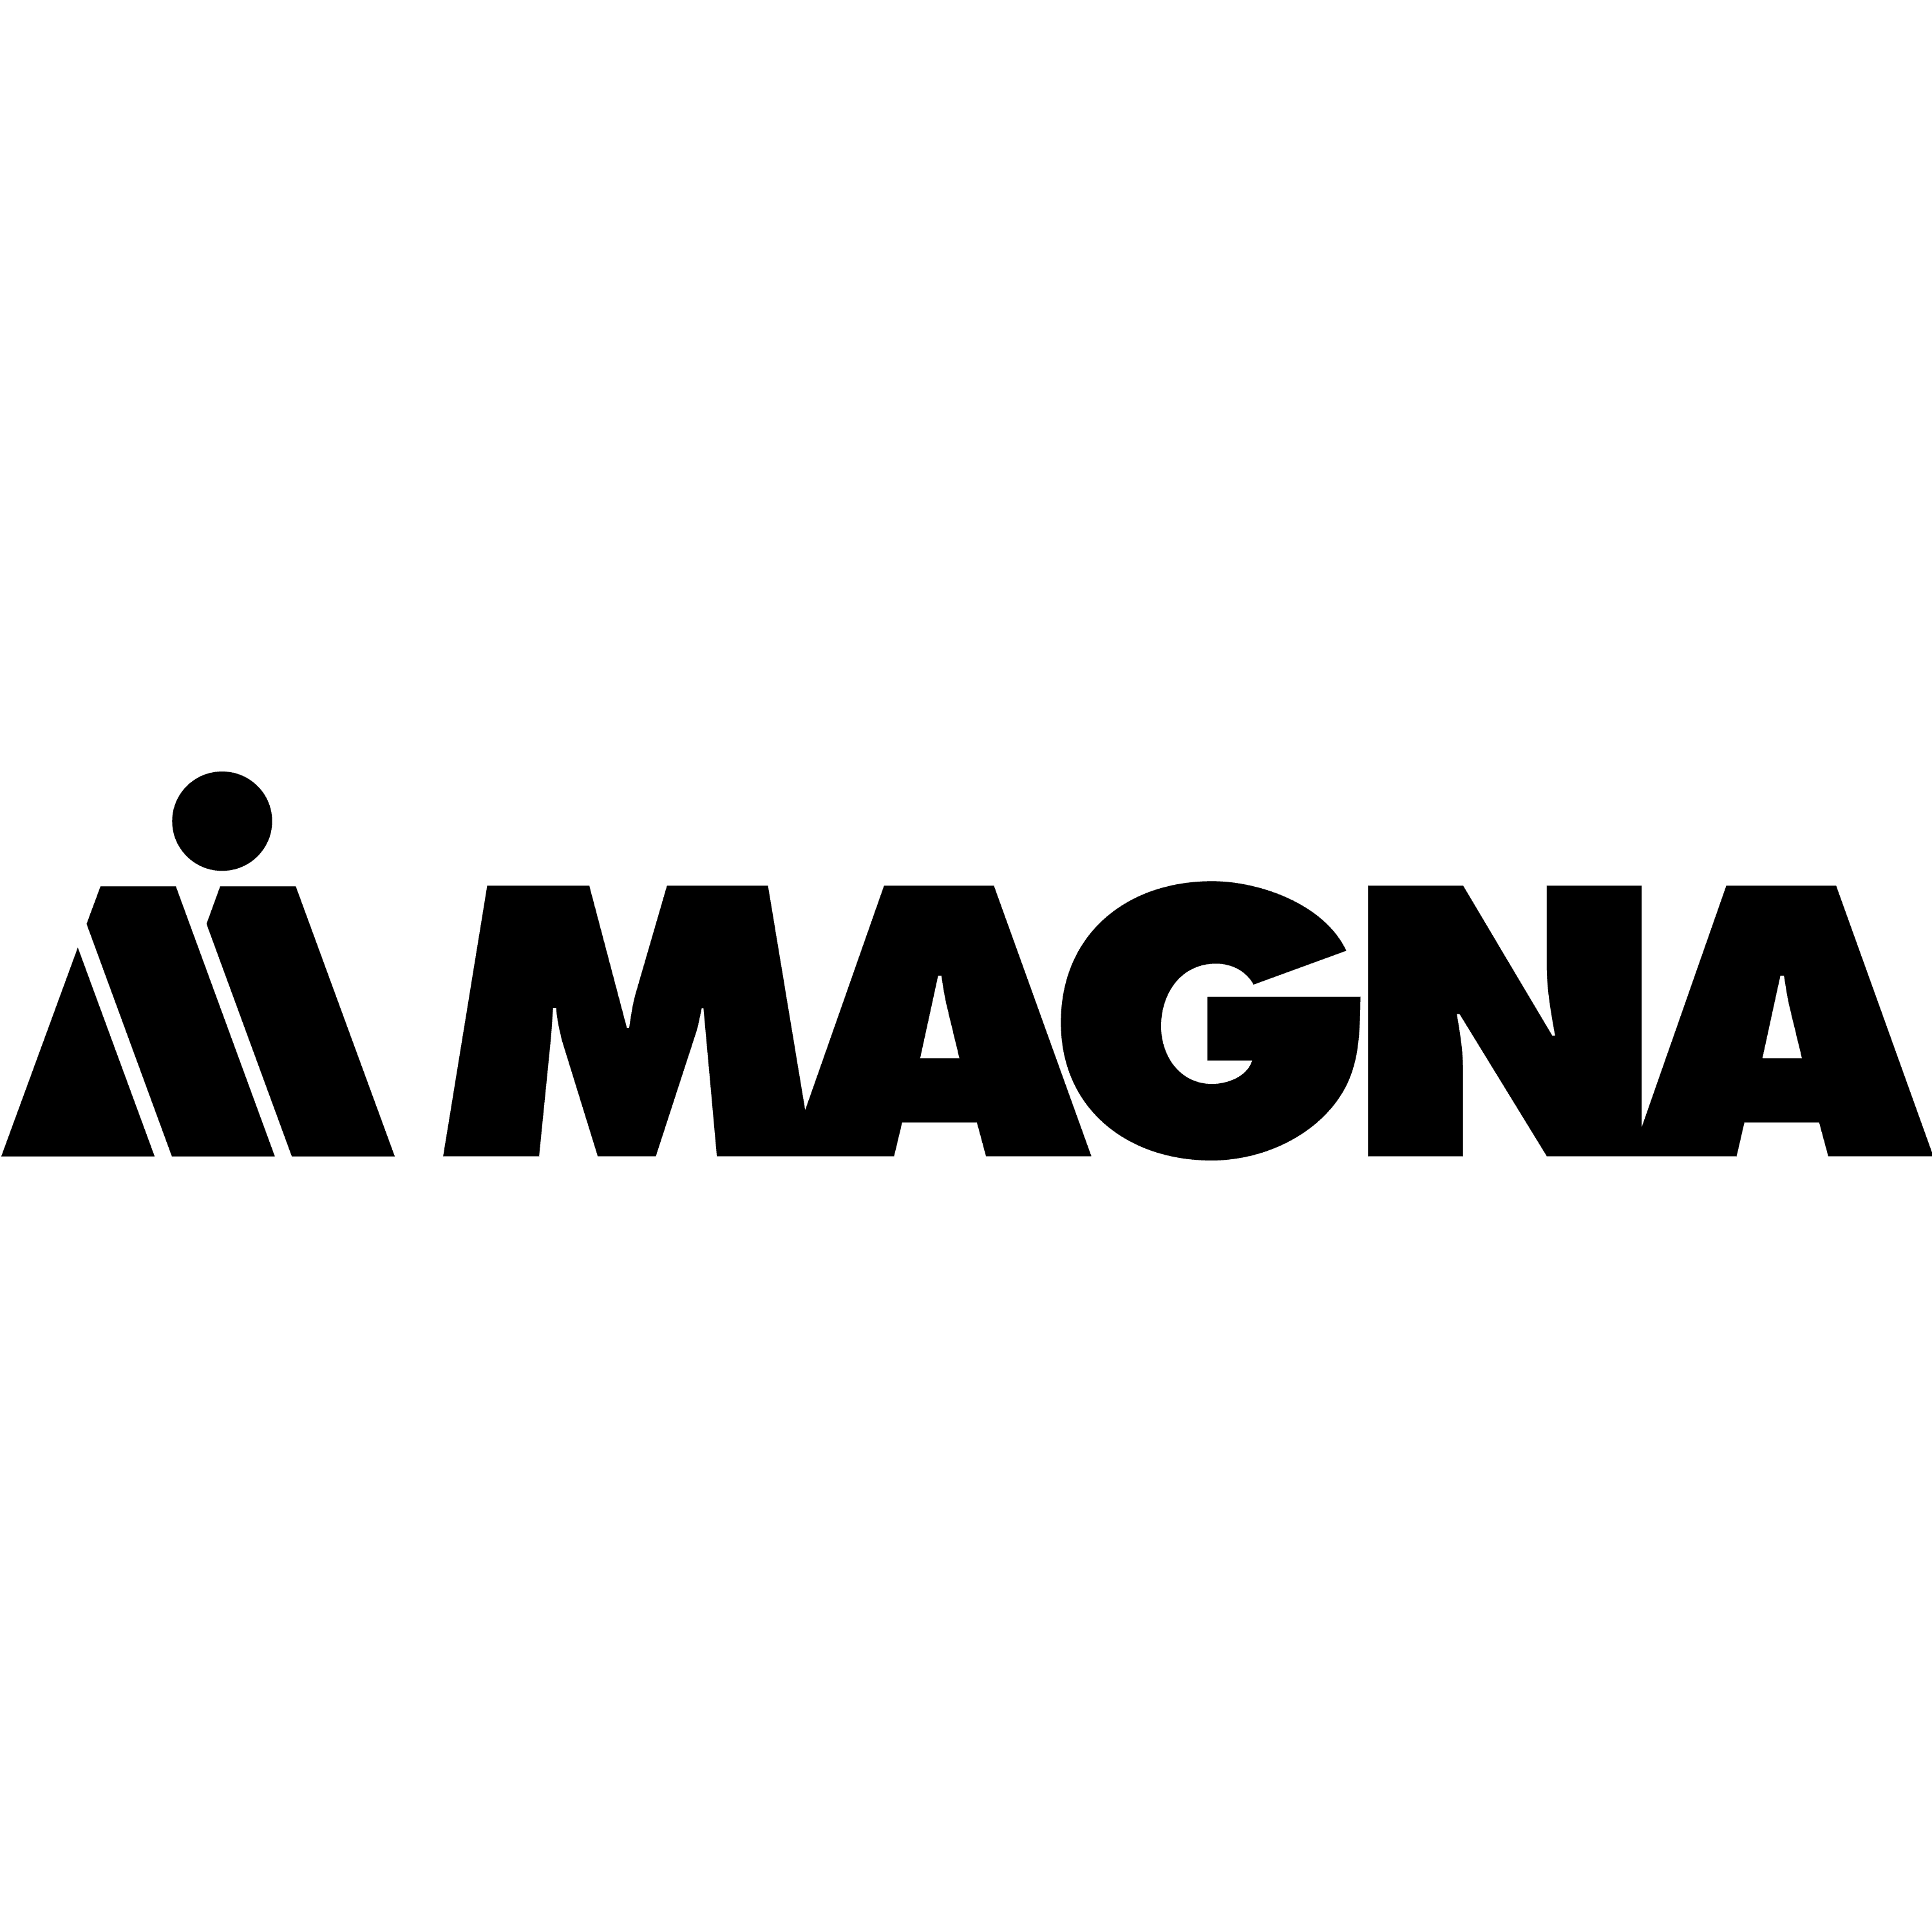 Magna-Logo auf einem Hintergrund.